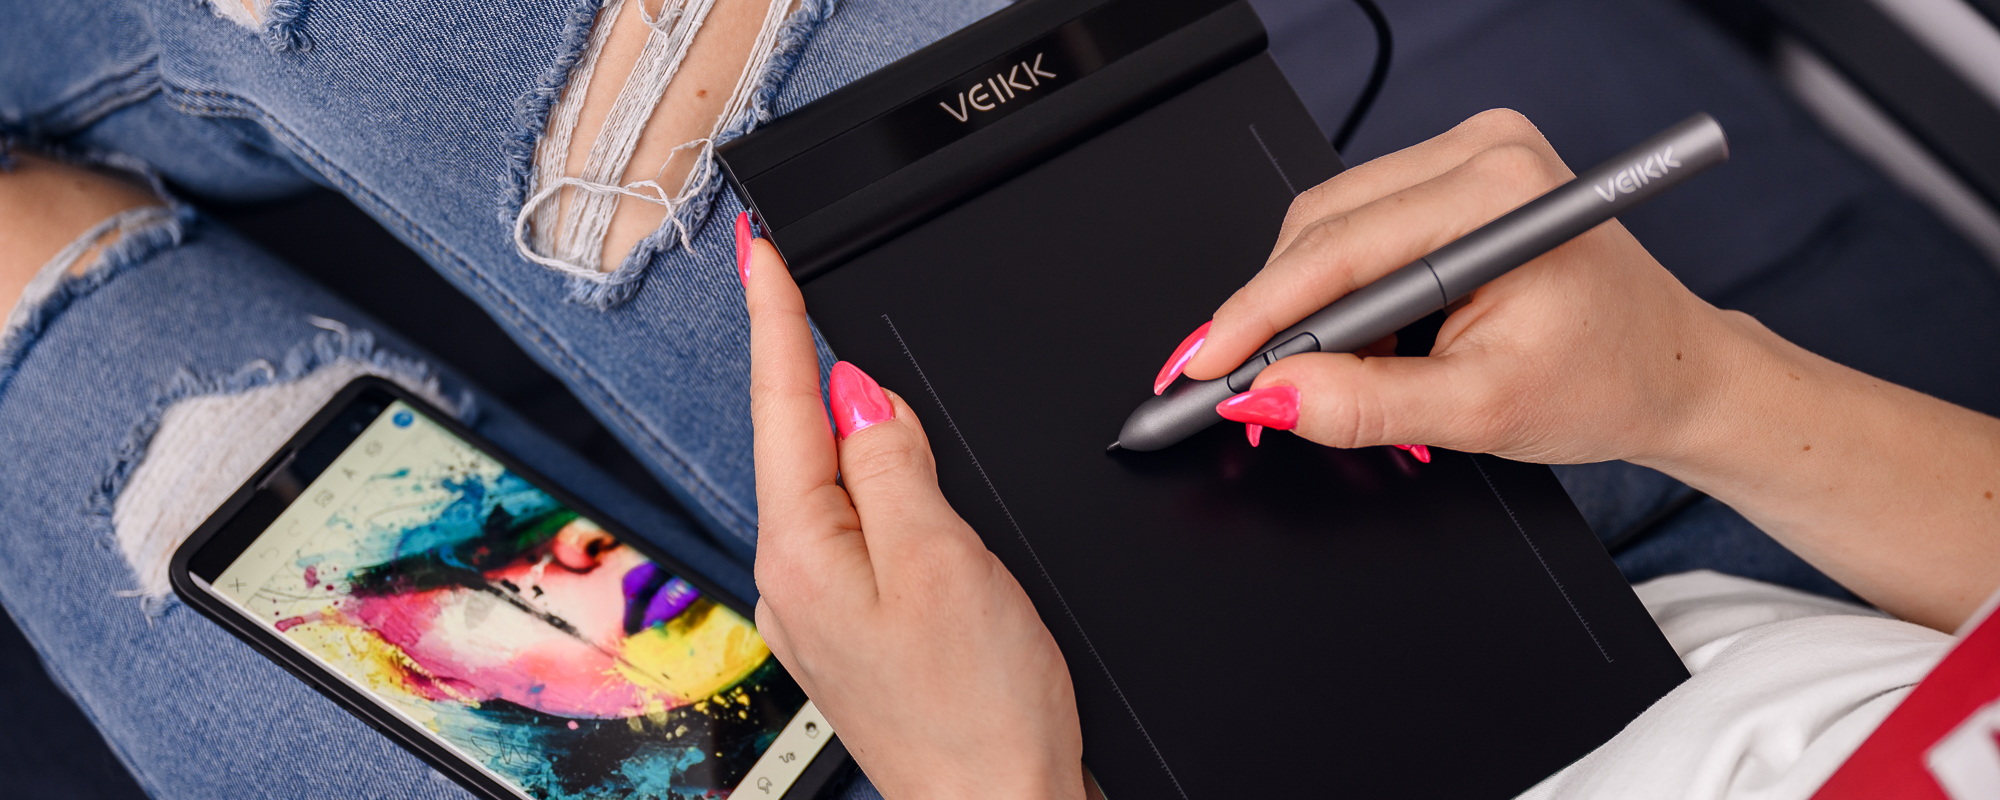 Zdjęcie - tablet Veikk S640 podłączony do smartfona, obsługiwany przez kobietę z różowymi paznokciami